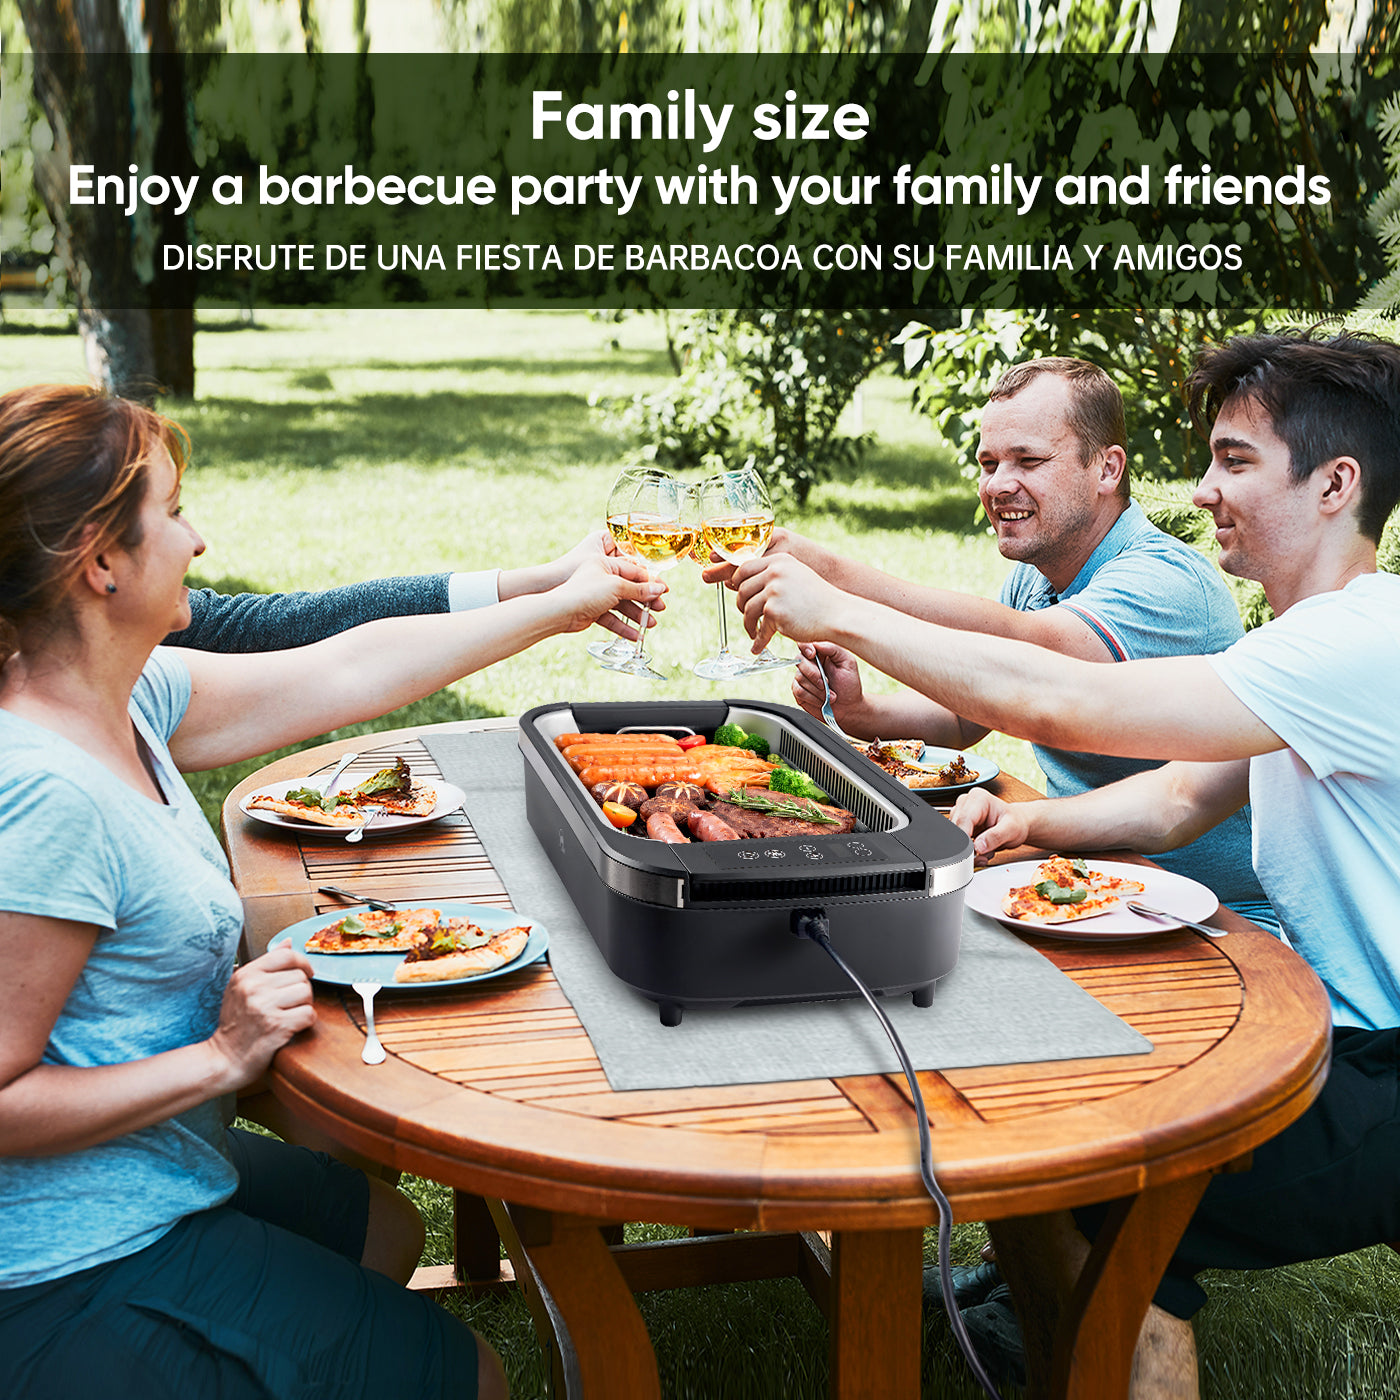 Family size enjoy a barbecue party with your family and friends disfrute de una fiesta de barbacoa con su familia y amigos